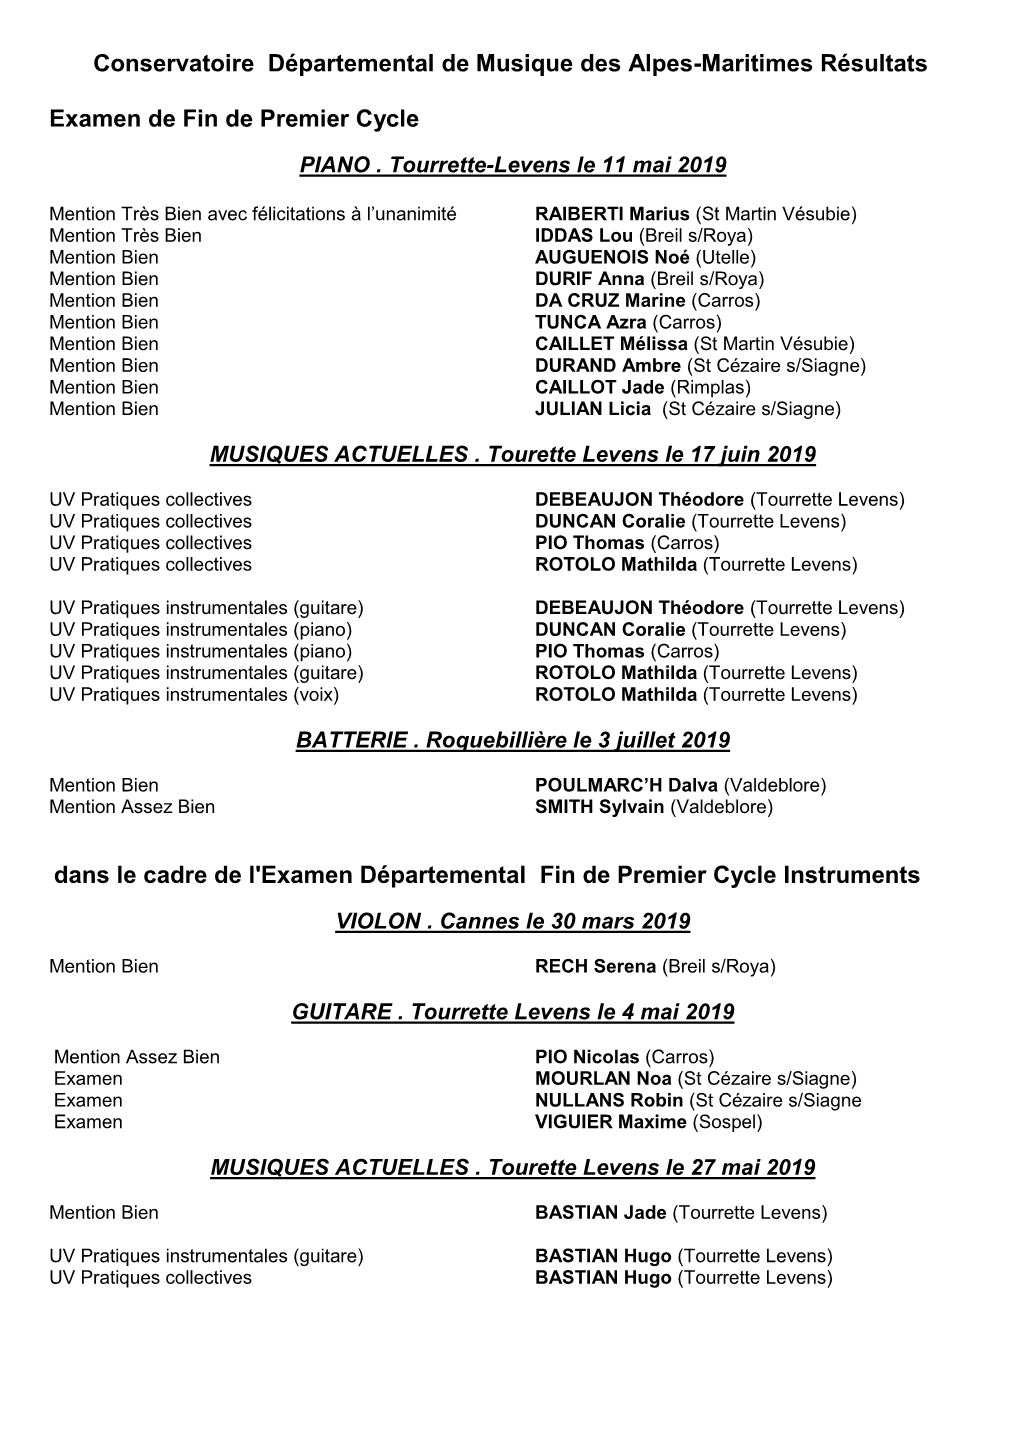 Conservatoire Départemental De Musique Des Alpes-Maritimes Résultats Examen De Fin De Premier Cycle Dans Le Cadre De L'exame